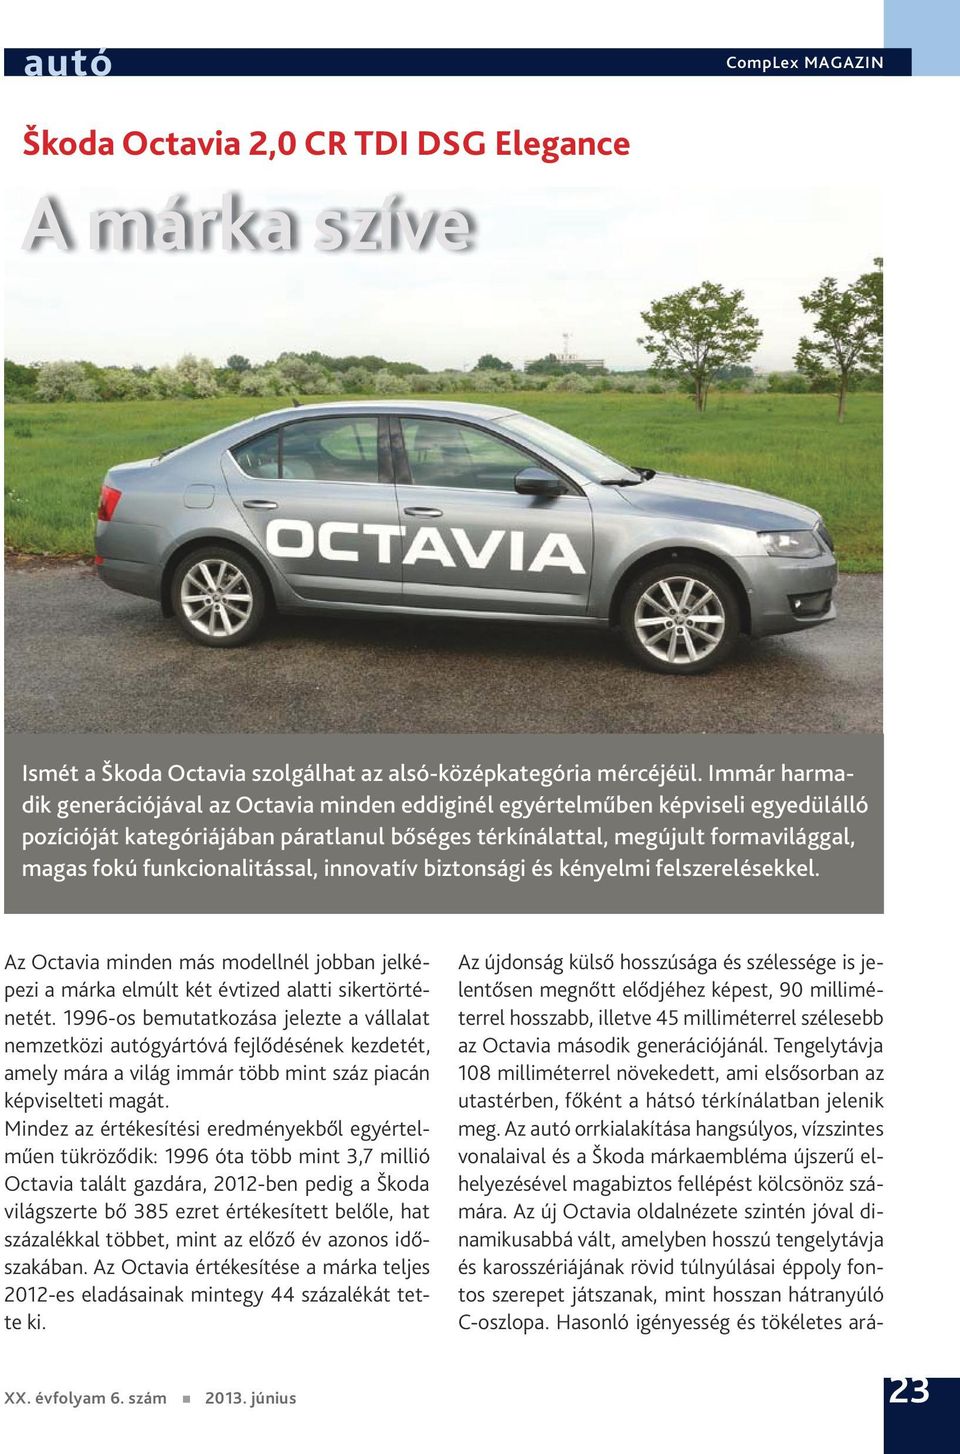 funkcionalitással, innovatív biztonsági és kényelmi felszerelésekkel. Az Octavia minden más modellnél jobban jelképezi a márka elmúlt két évtized alatti sikertörténetét.